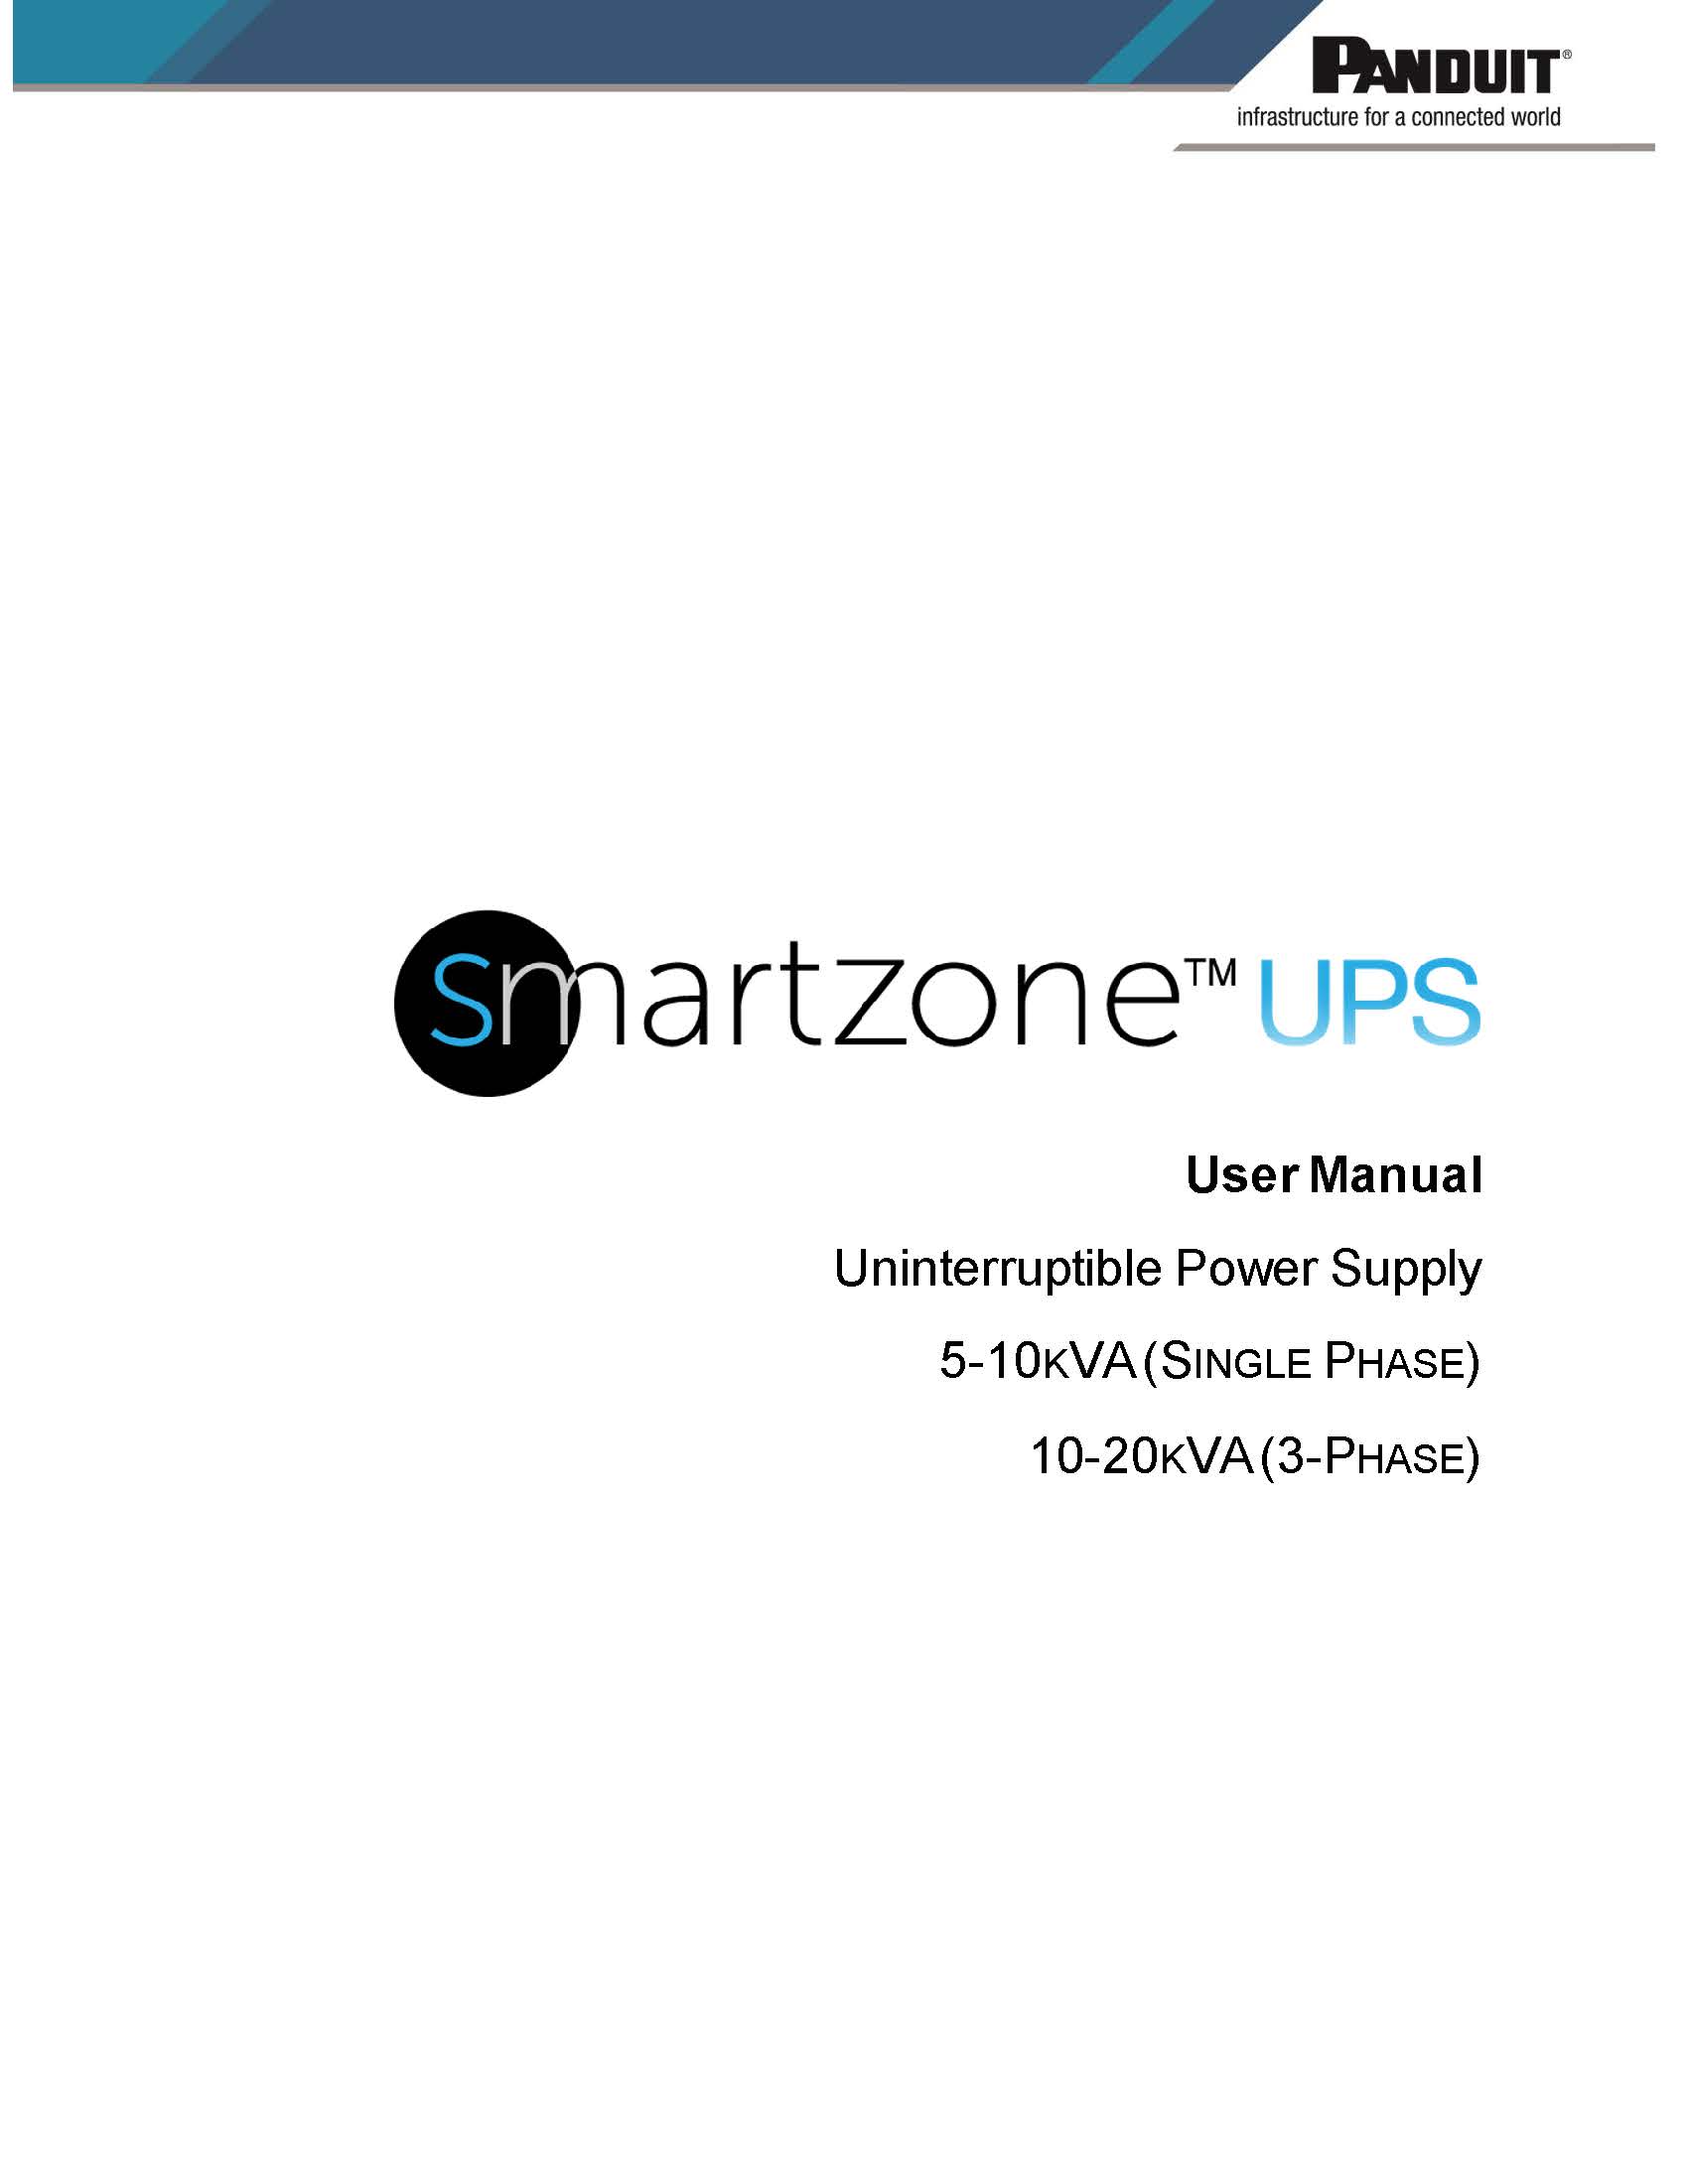 SZ UPS 5-20 kVA User Manual - 1.jpg